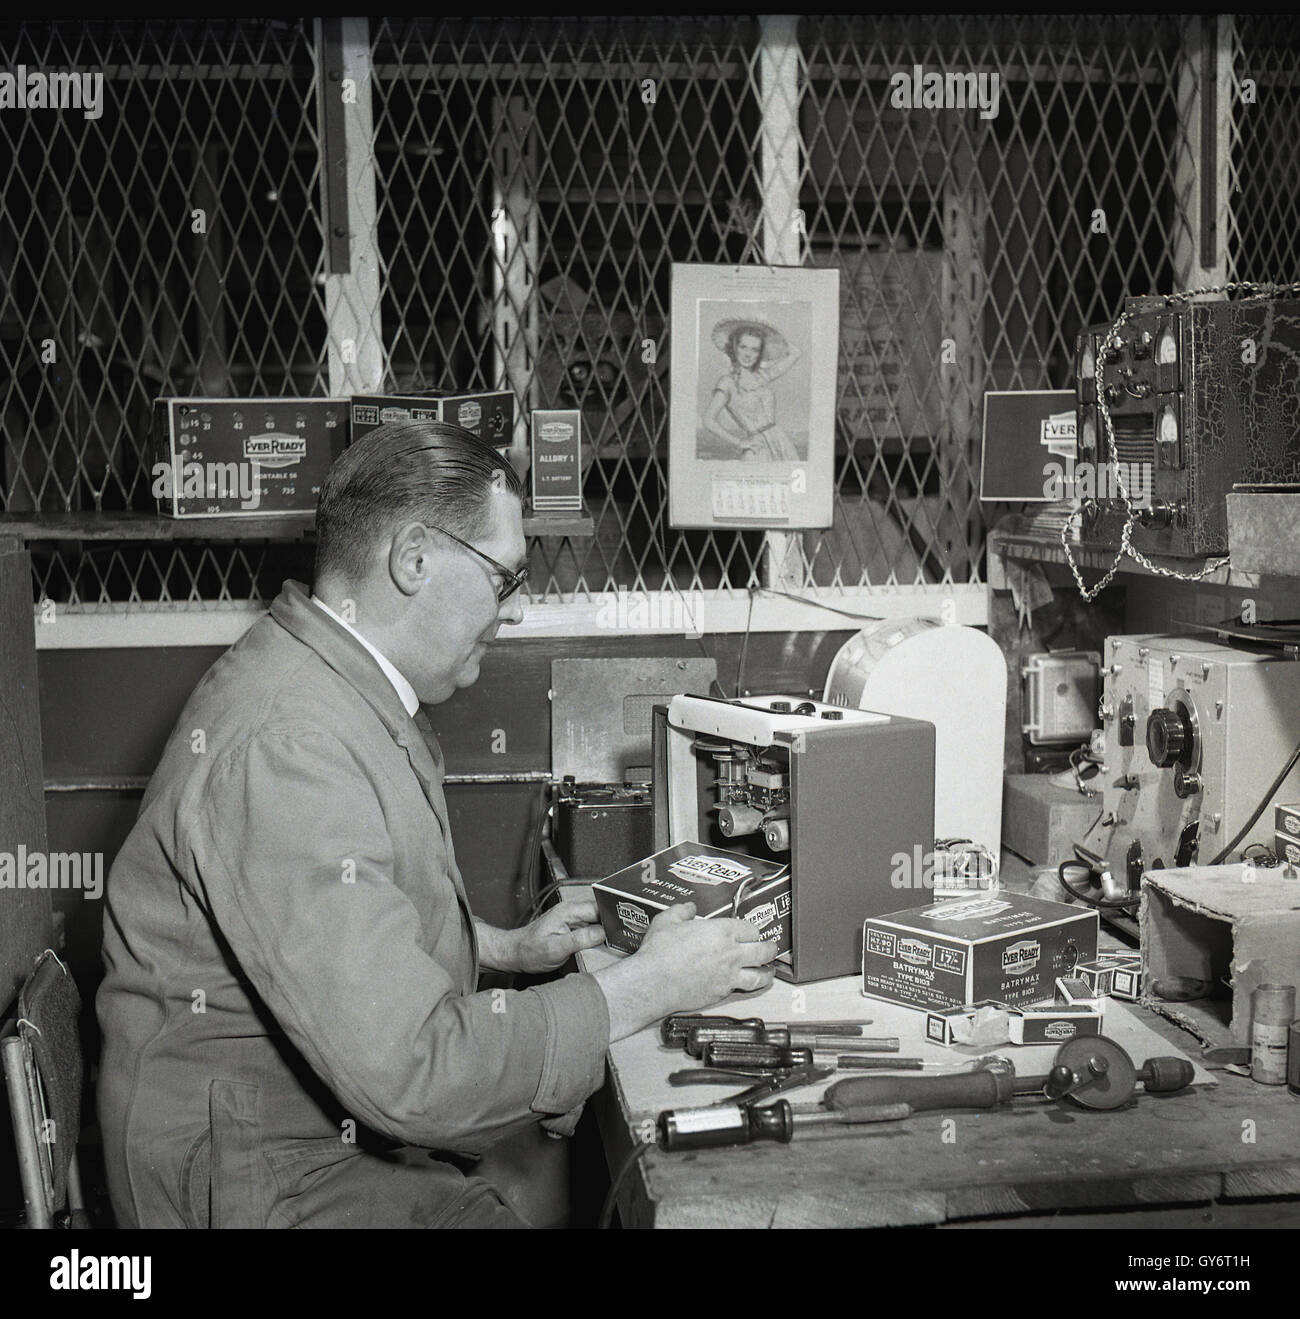 Radio transistor II a pilas Emerson, Radios antiguas